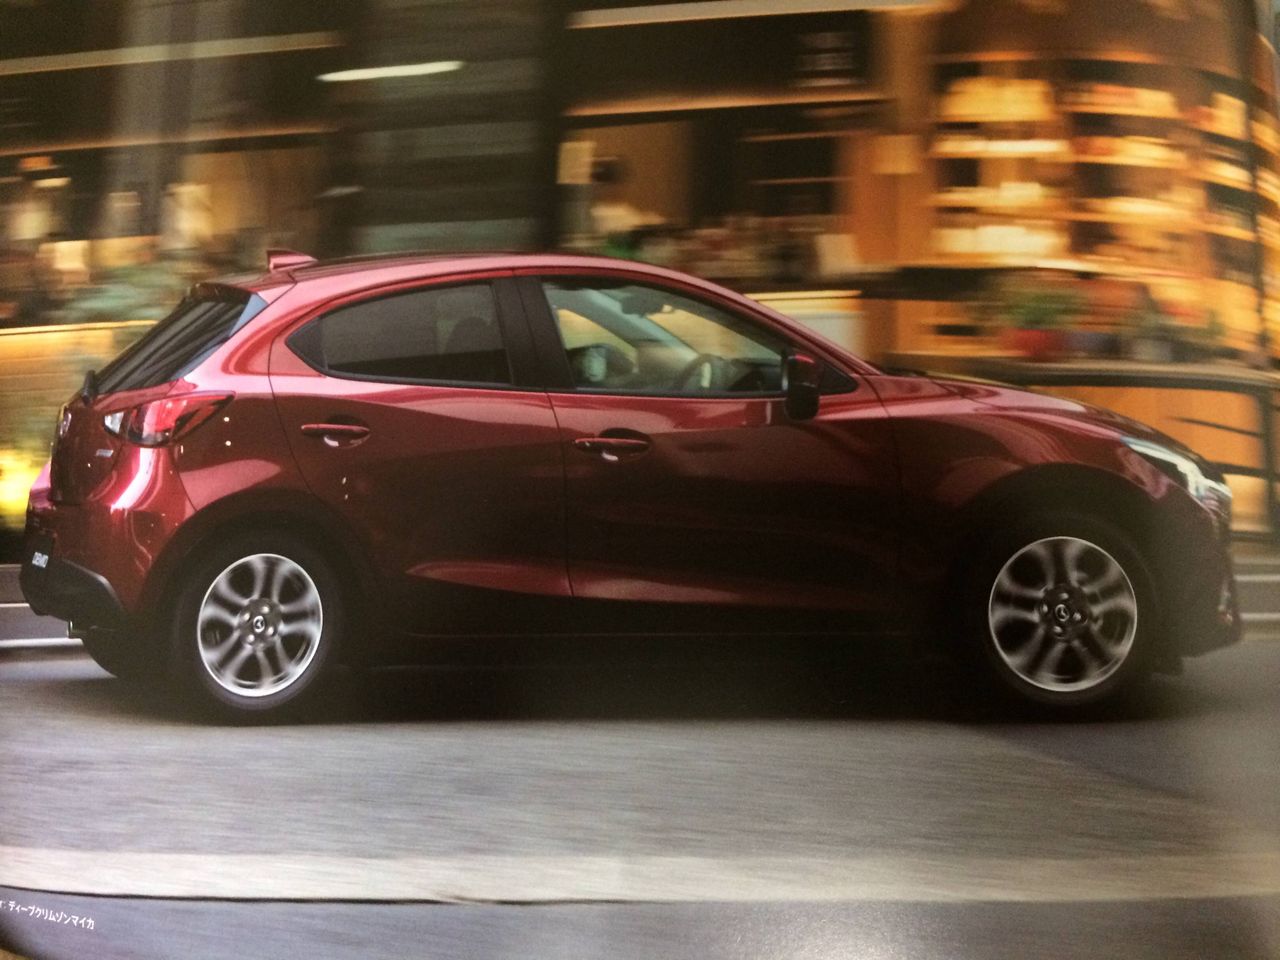 International, brosur-mazda-2-facelift-jepang: Brosur Mazda 2 Facelift Bocor, Yuk Intip Ubahannya!